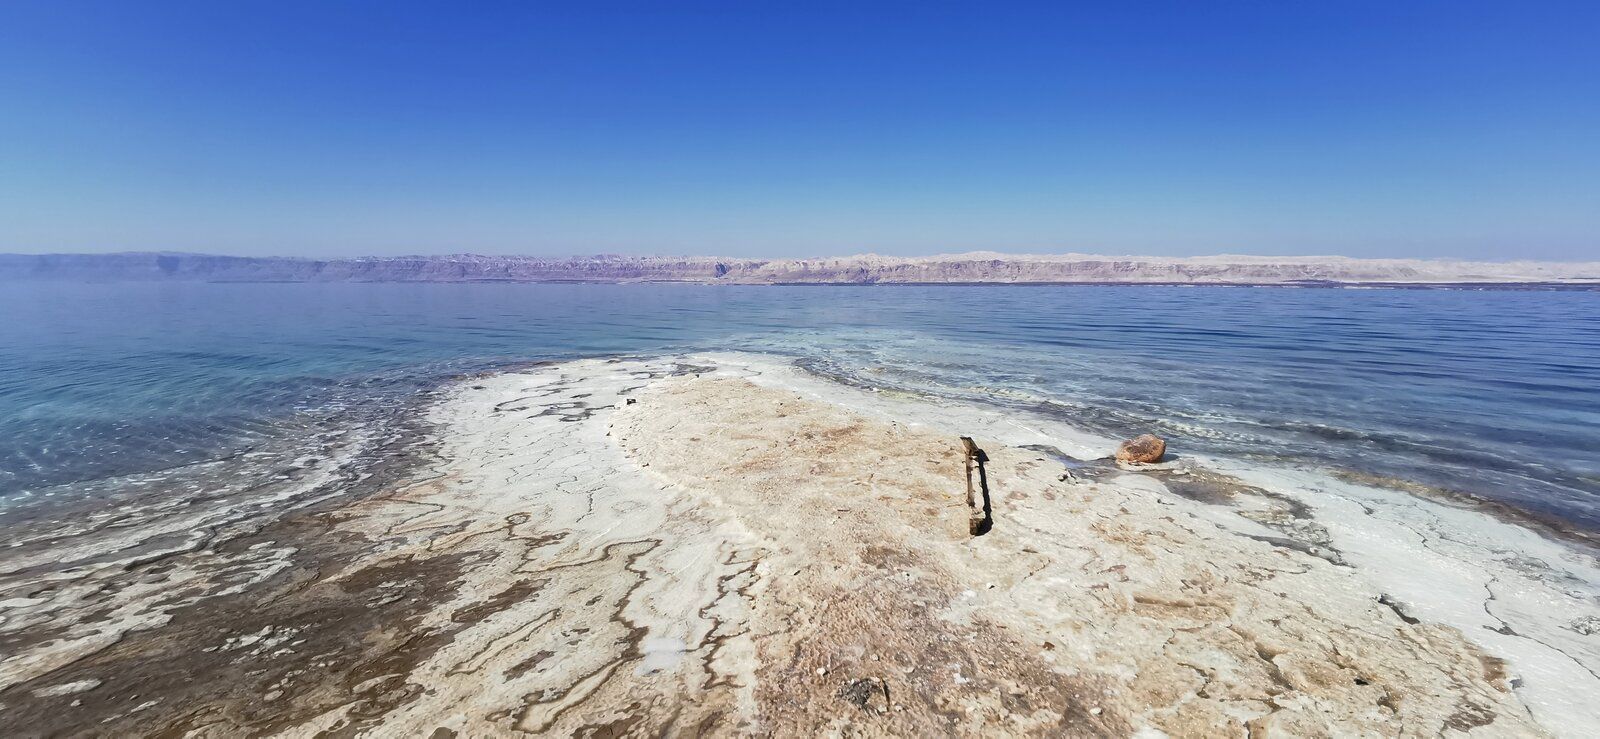 24 Dead Sea.jpg